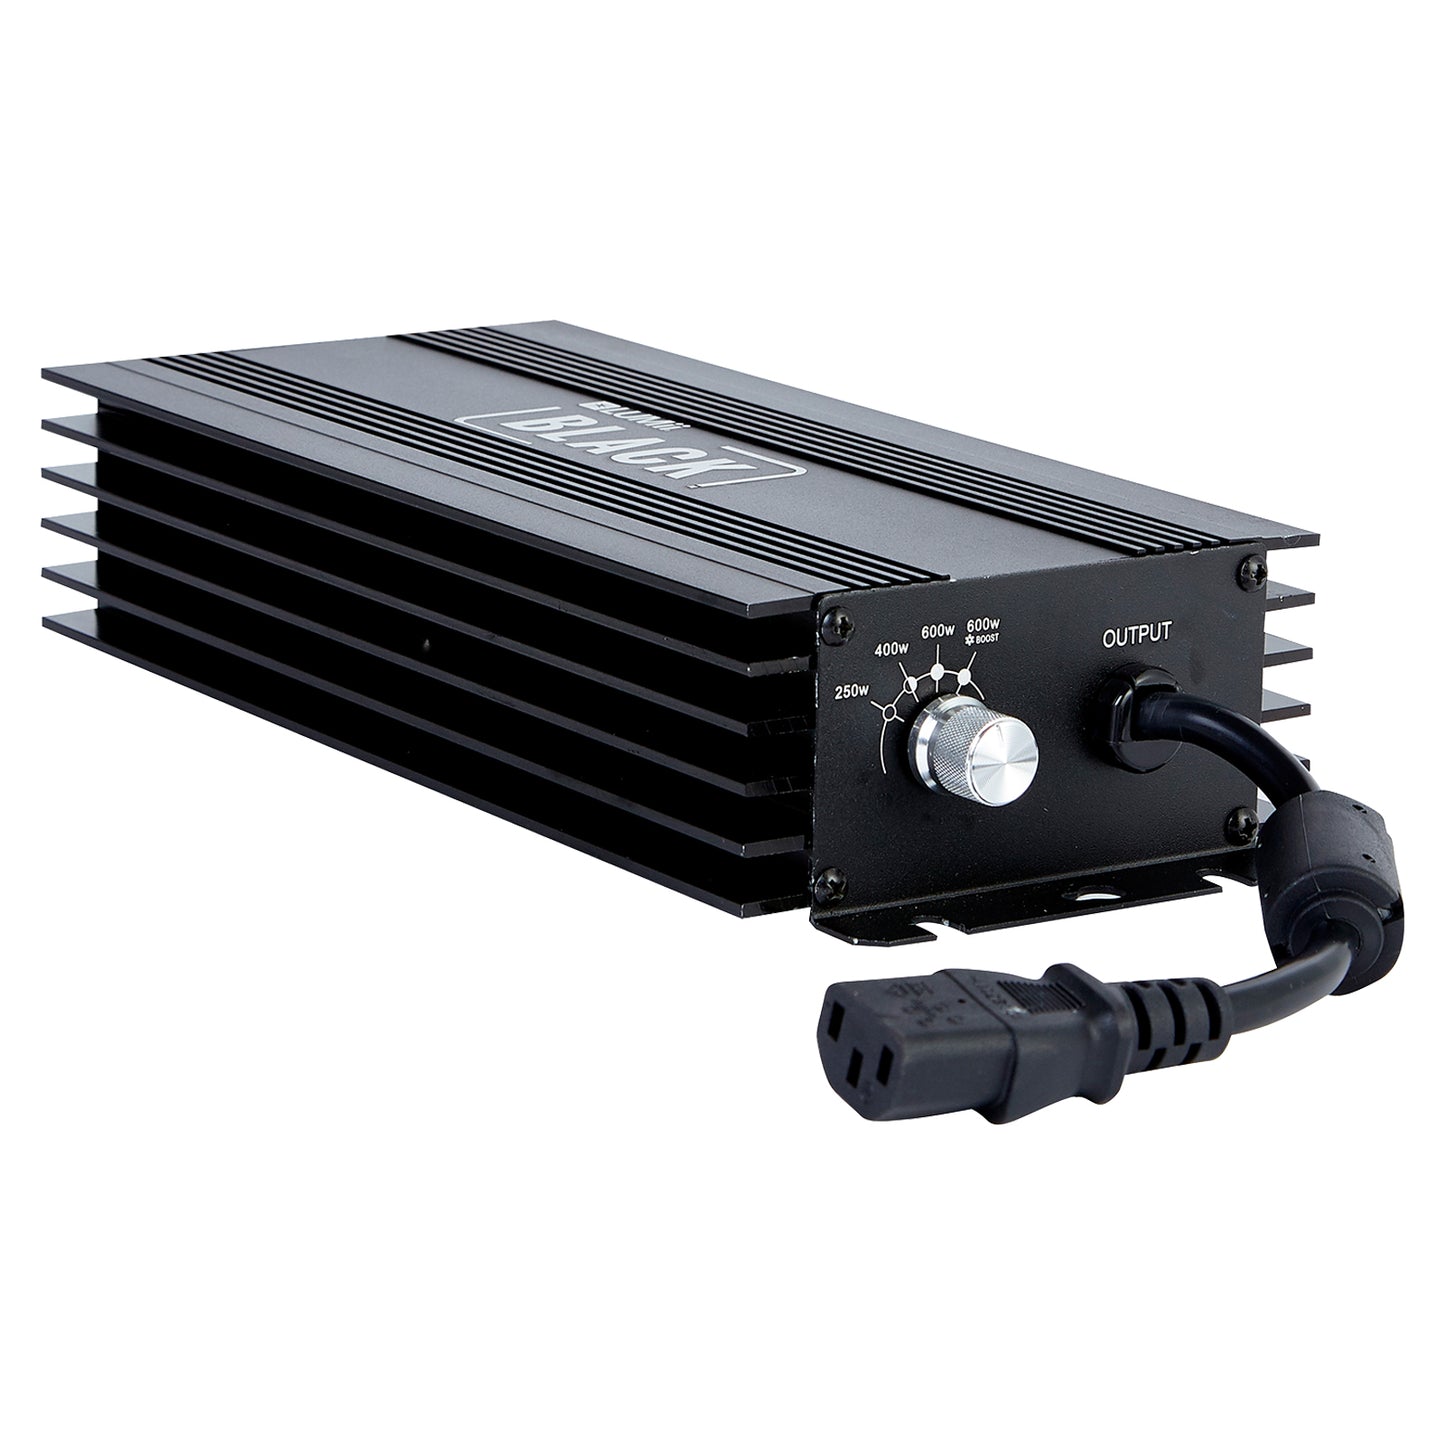 Lumii Black 600w Digital Light Kit Adjustable